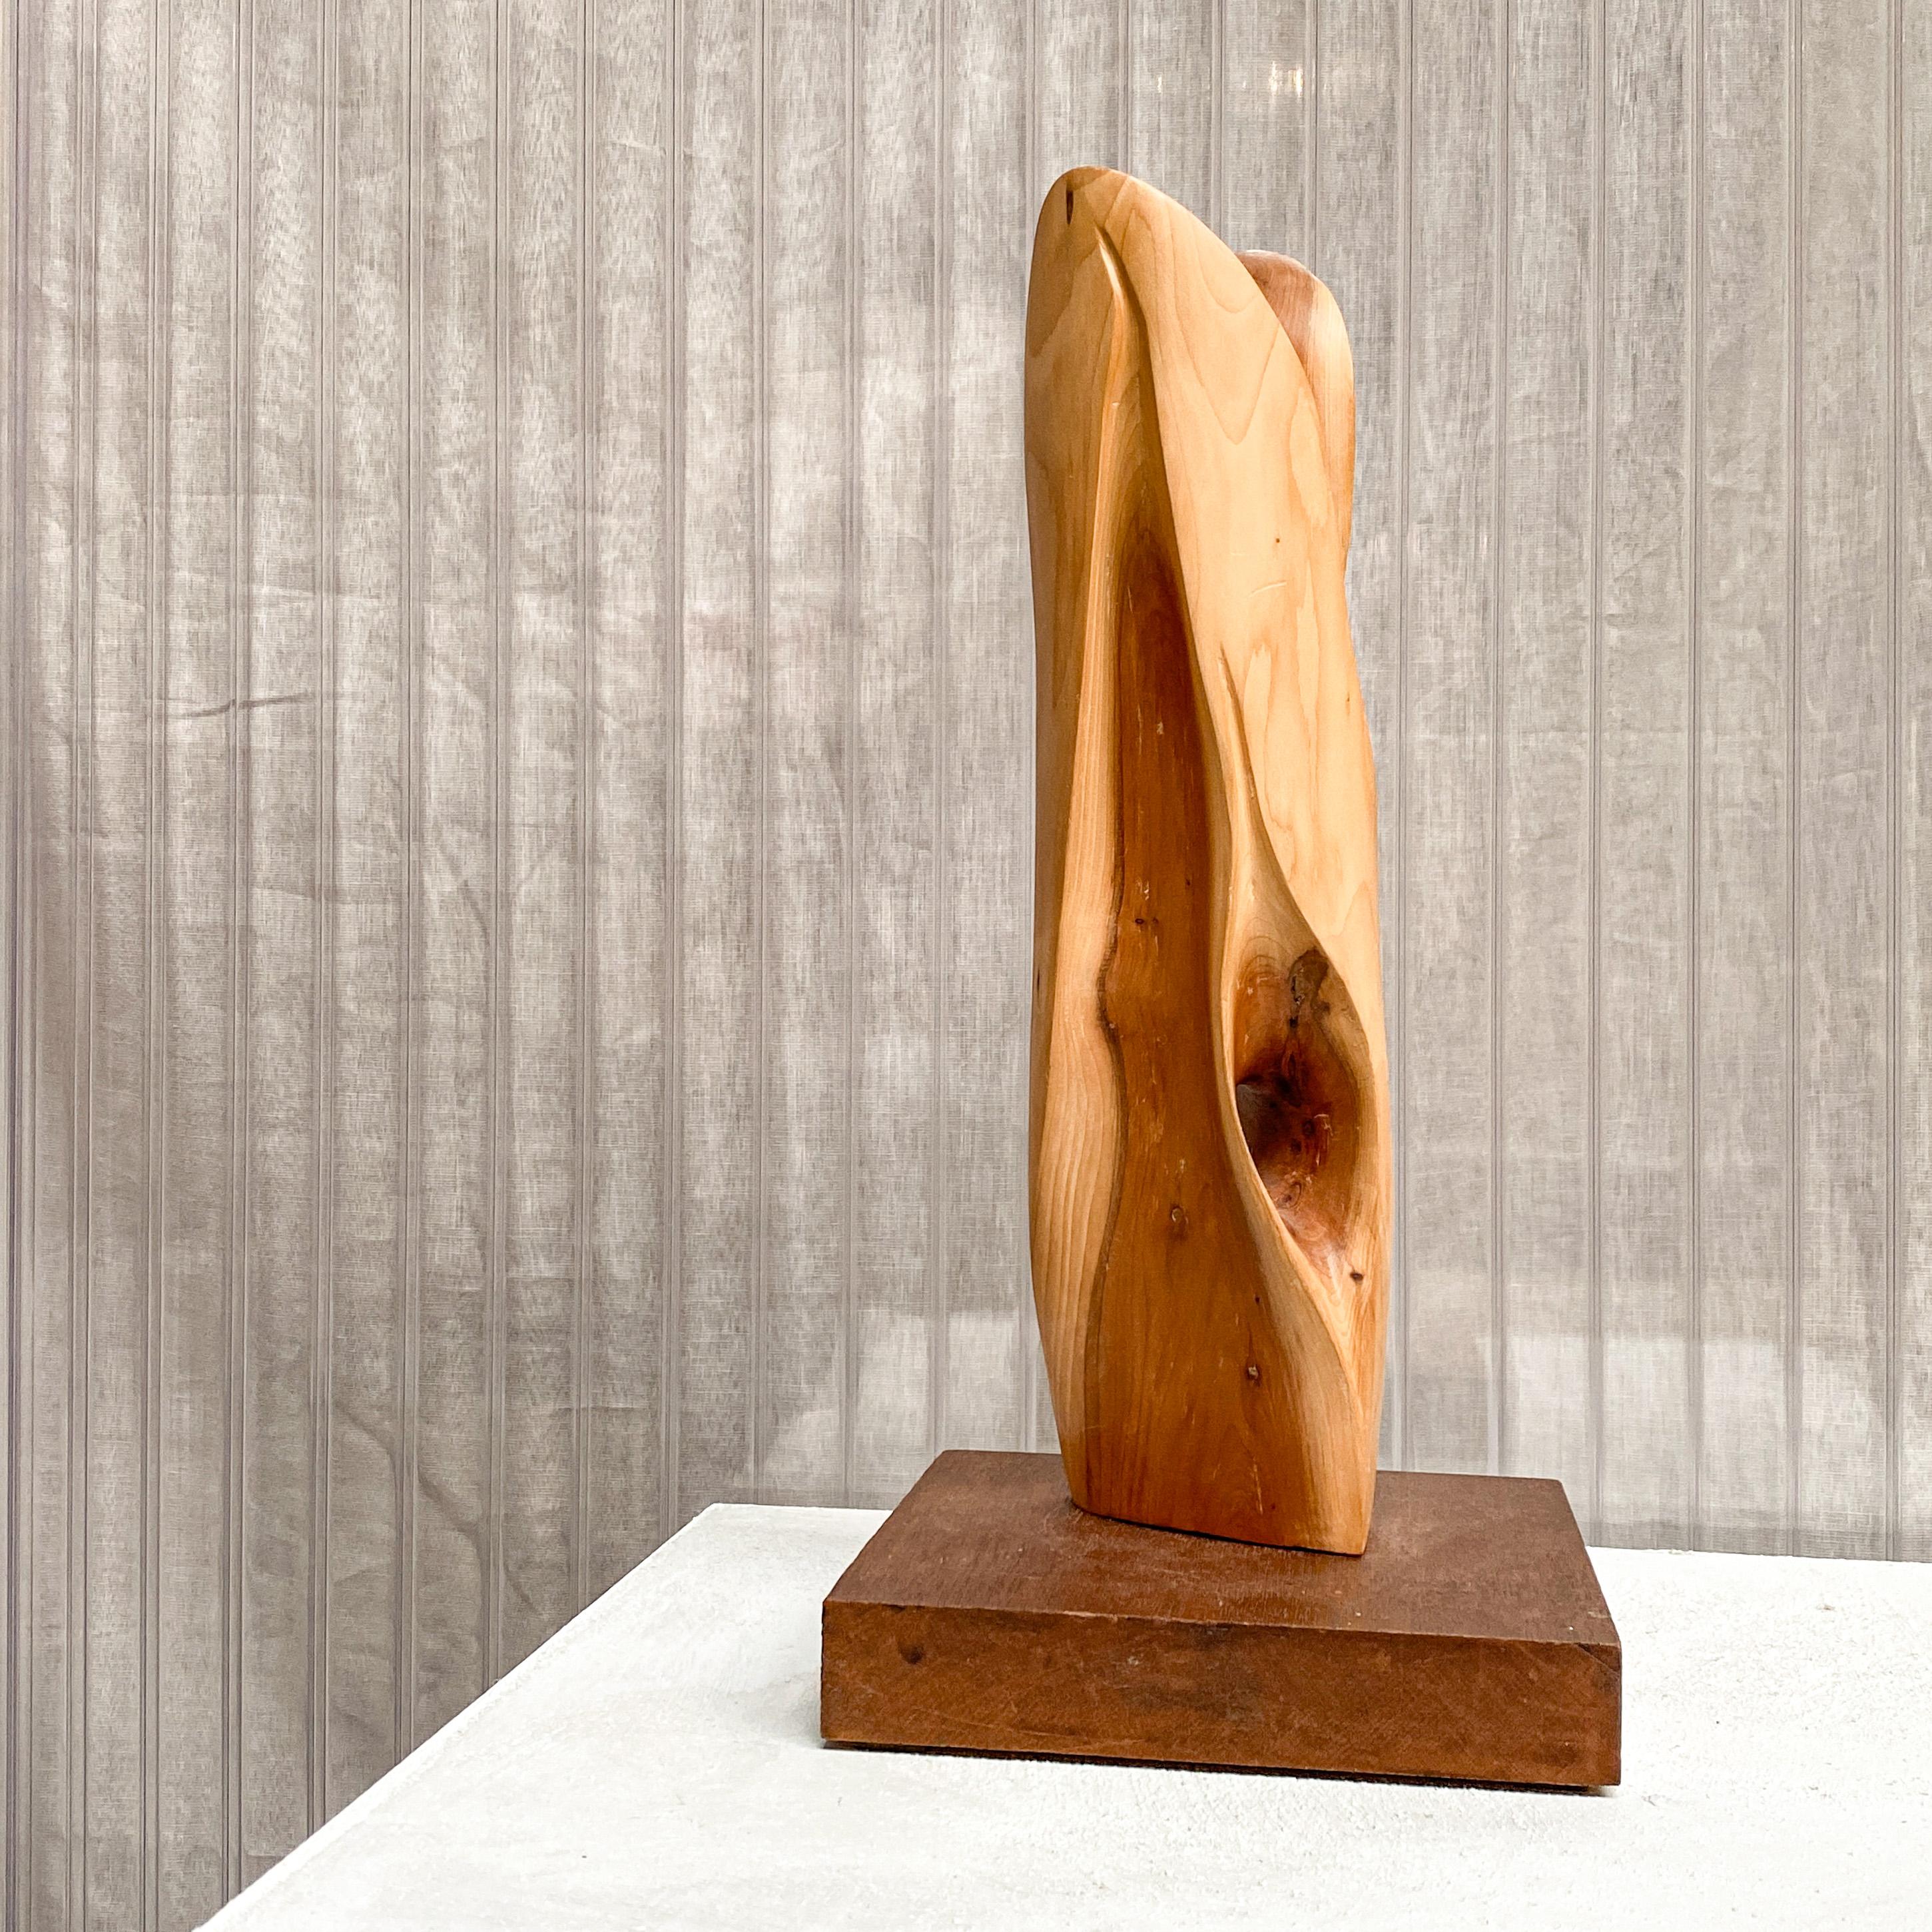 Une pièce amorphe et abstraite d'un artiste inconnu. Une forme de totem sculptée à la main, en bois naturel, avec une forme sculpturale, typique des années 1960/1970. Le bois avec des fissures et des craquelures naturelles.

La forme est montée sur